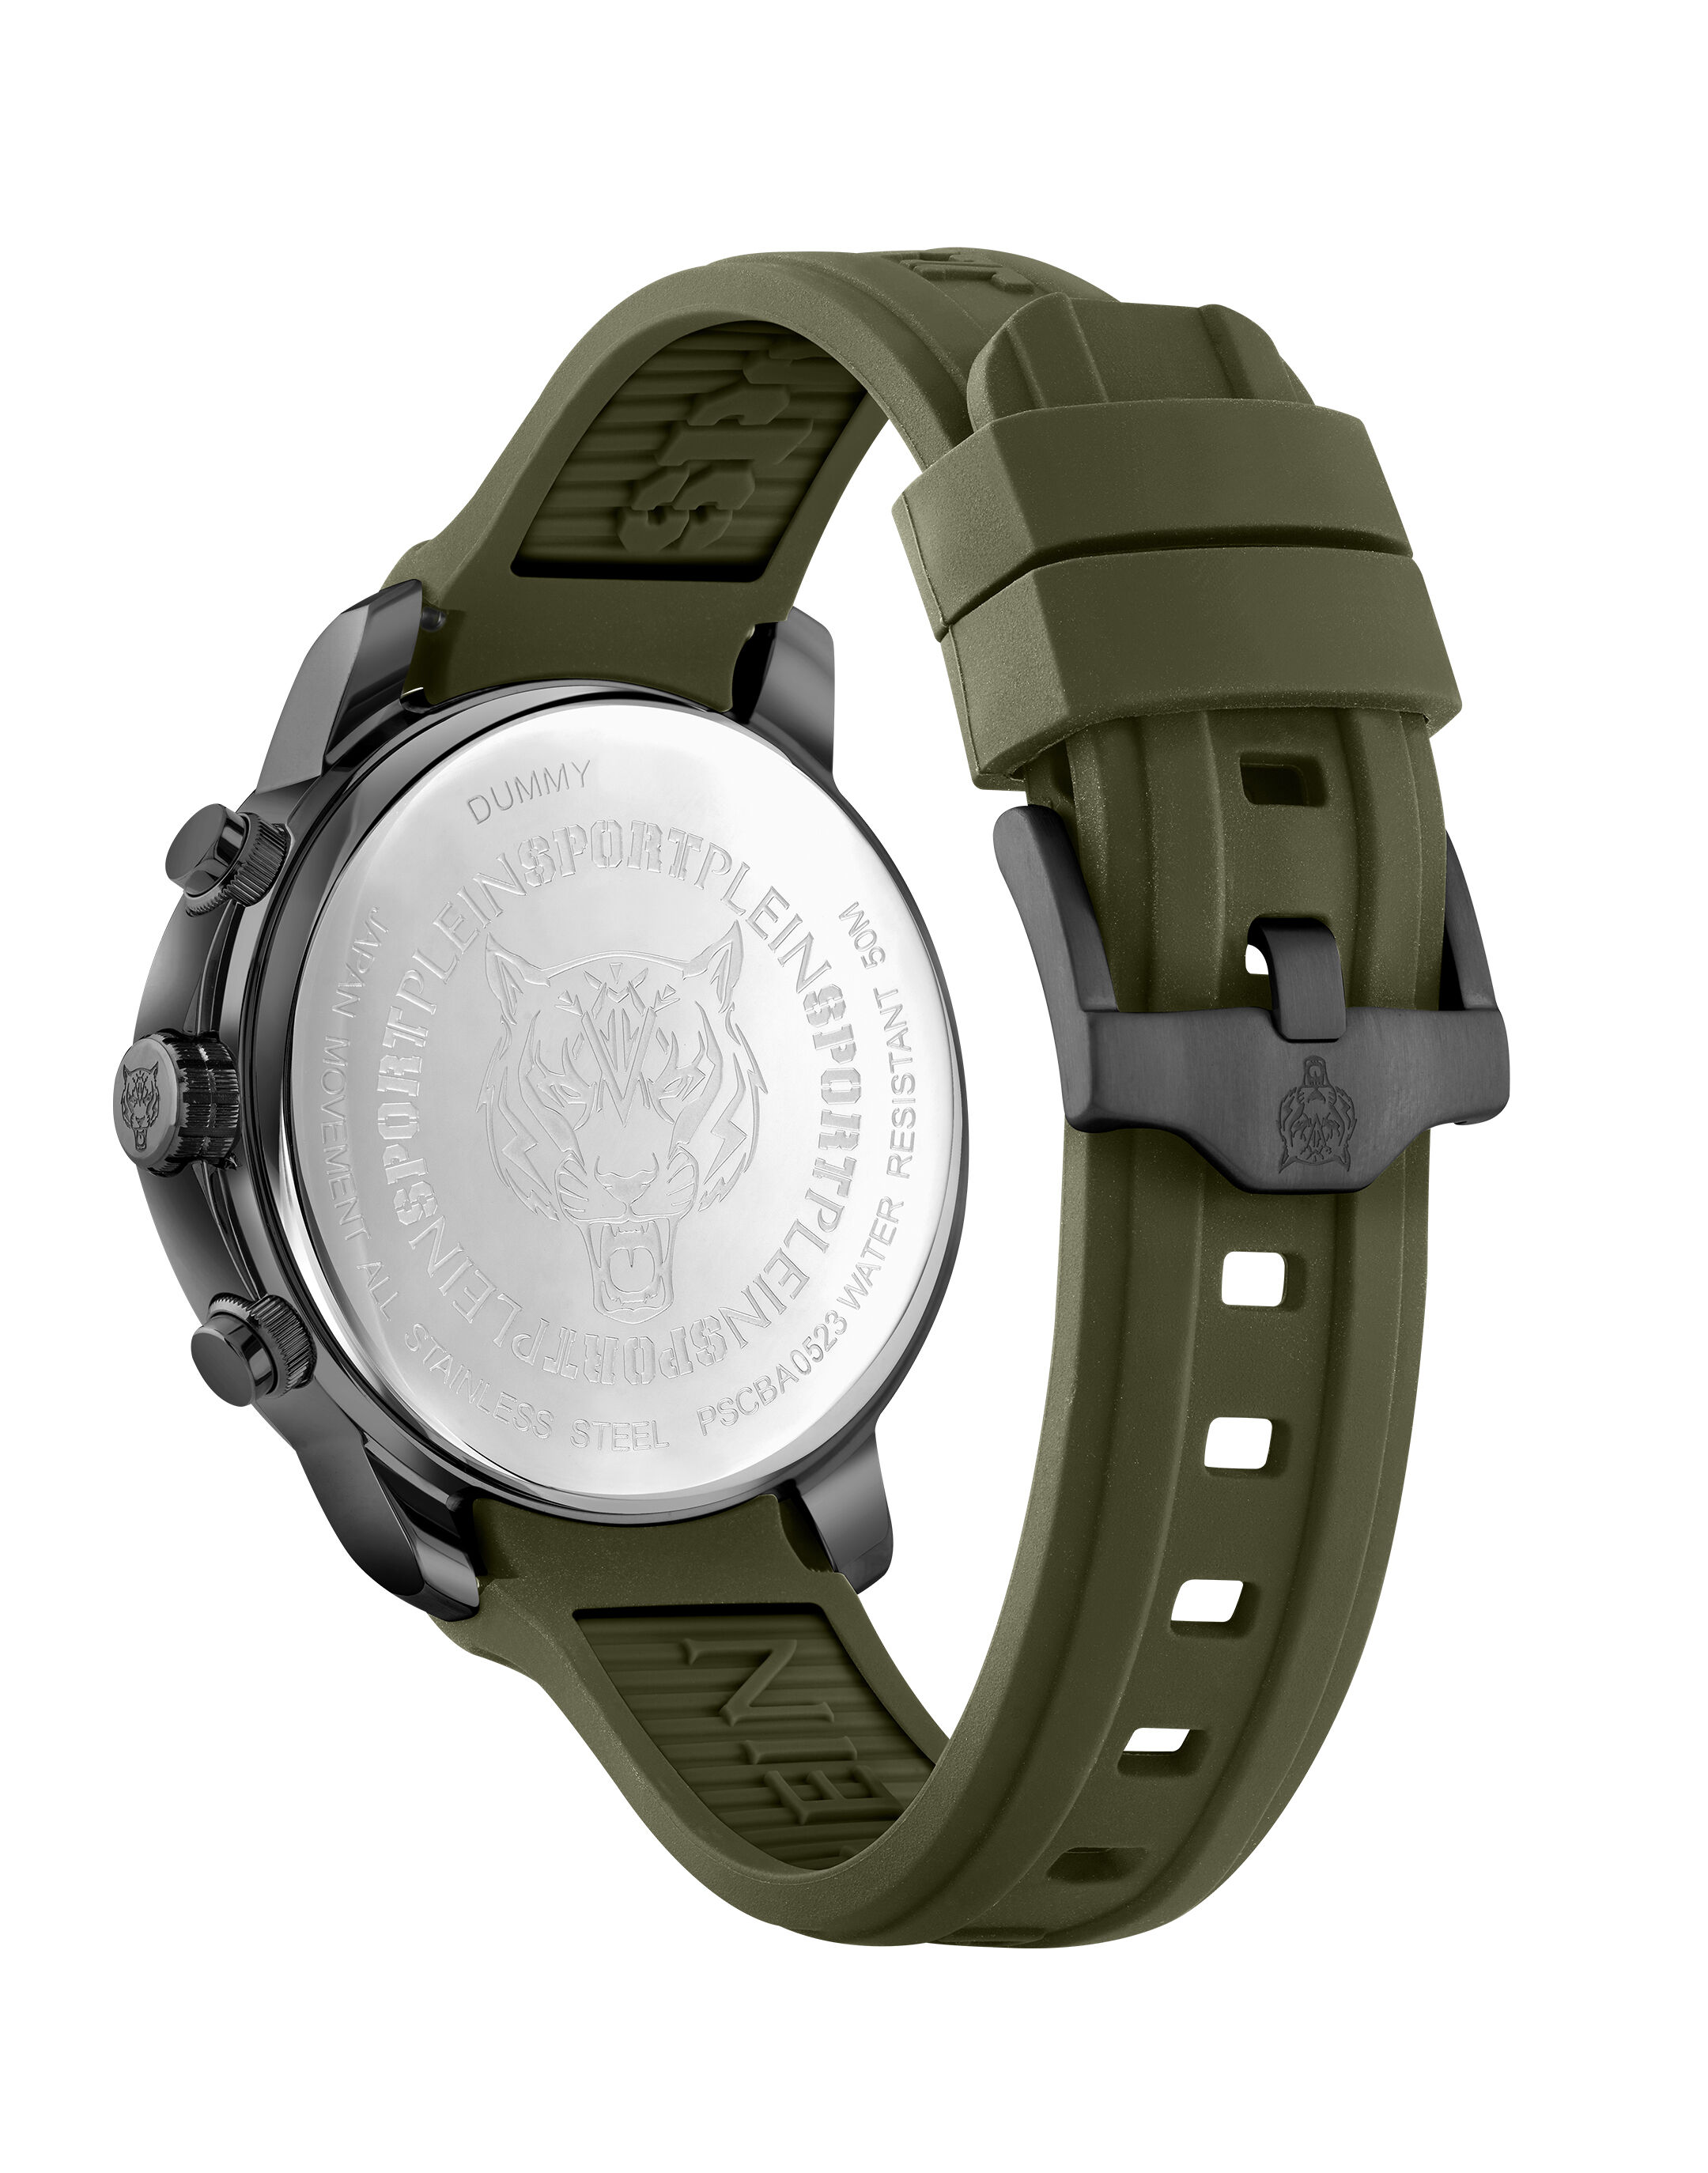 EGON VON FURSTENBERG Gent's Wristwatch EV1009 WATCH (PSL022139) | eBay